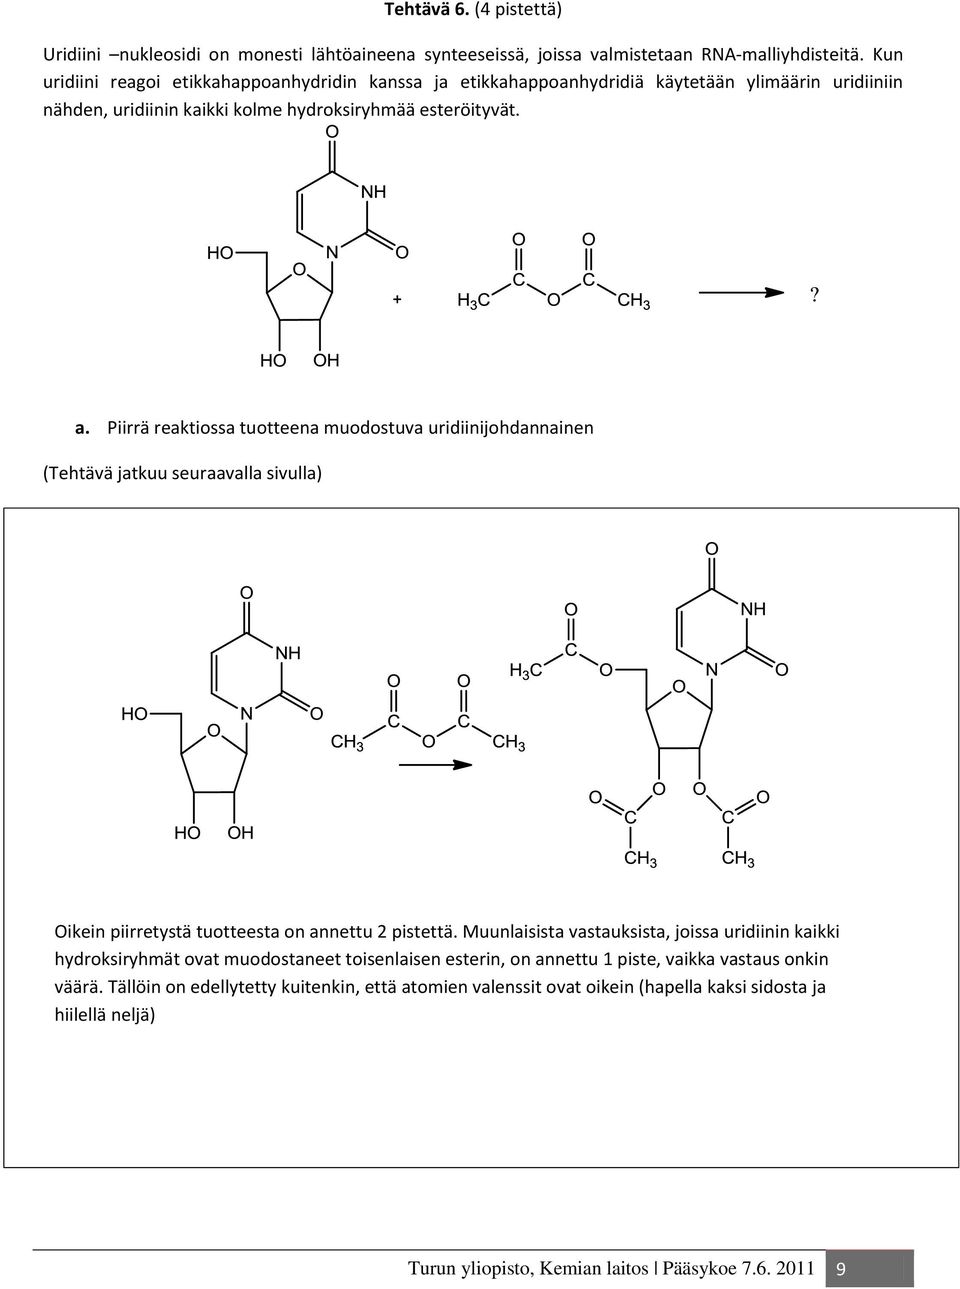 Piirrä reaktiossa tuotteena muodostuva uridiinijohdannainen (Tehtävä jatkuu seuraavalla sivulla) Oikein piirretystä uridiinijohdannaisesta, joka on esitetty yllä olevassa kuvassa, on annettu 2 p.